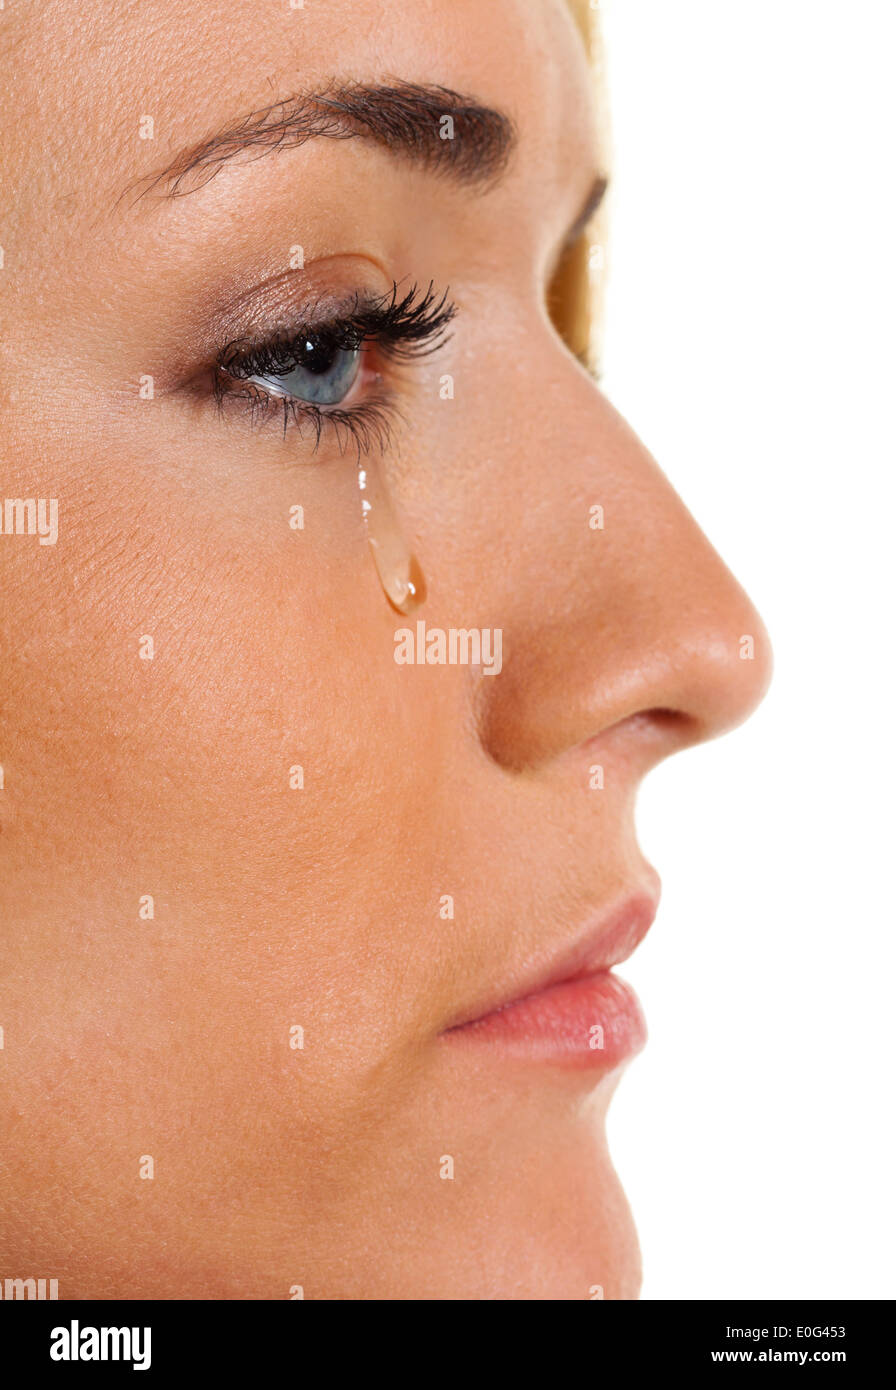 Une femme triste pleure larme. Photo symbolique de la peur, de l'alimentation, la dépression, Eine traurige Frau weint Traene. Symbolphoto Angst, Gewalt, Depr Banque D'Images